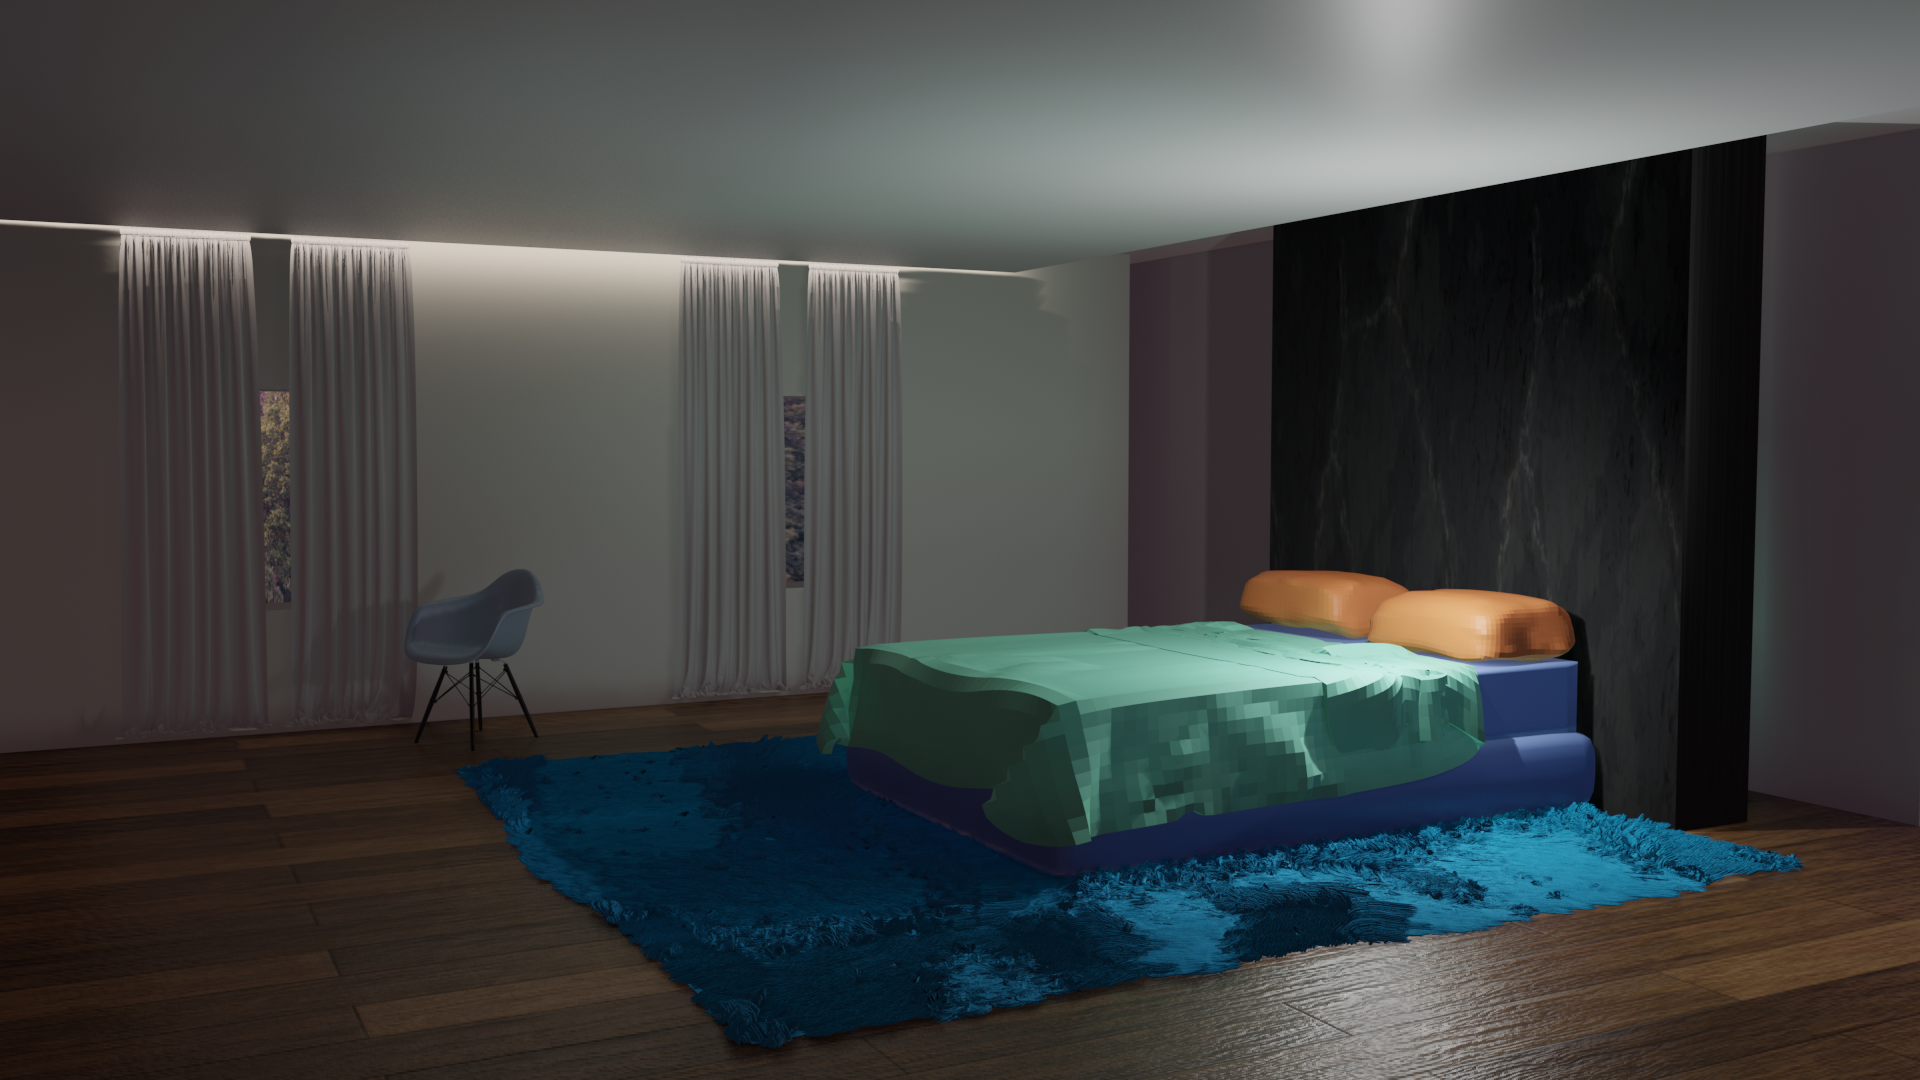 [Blender] Modern Bedroom